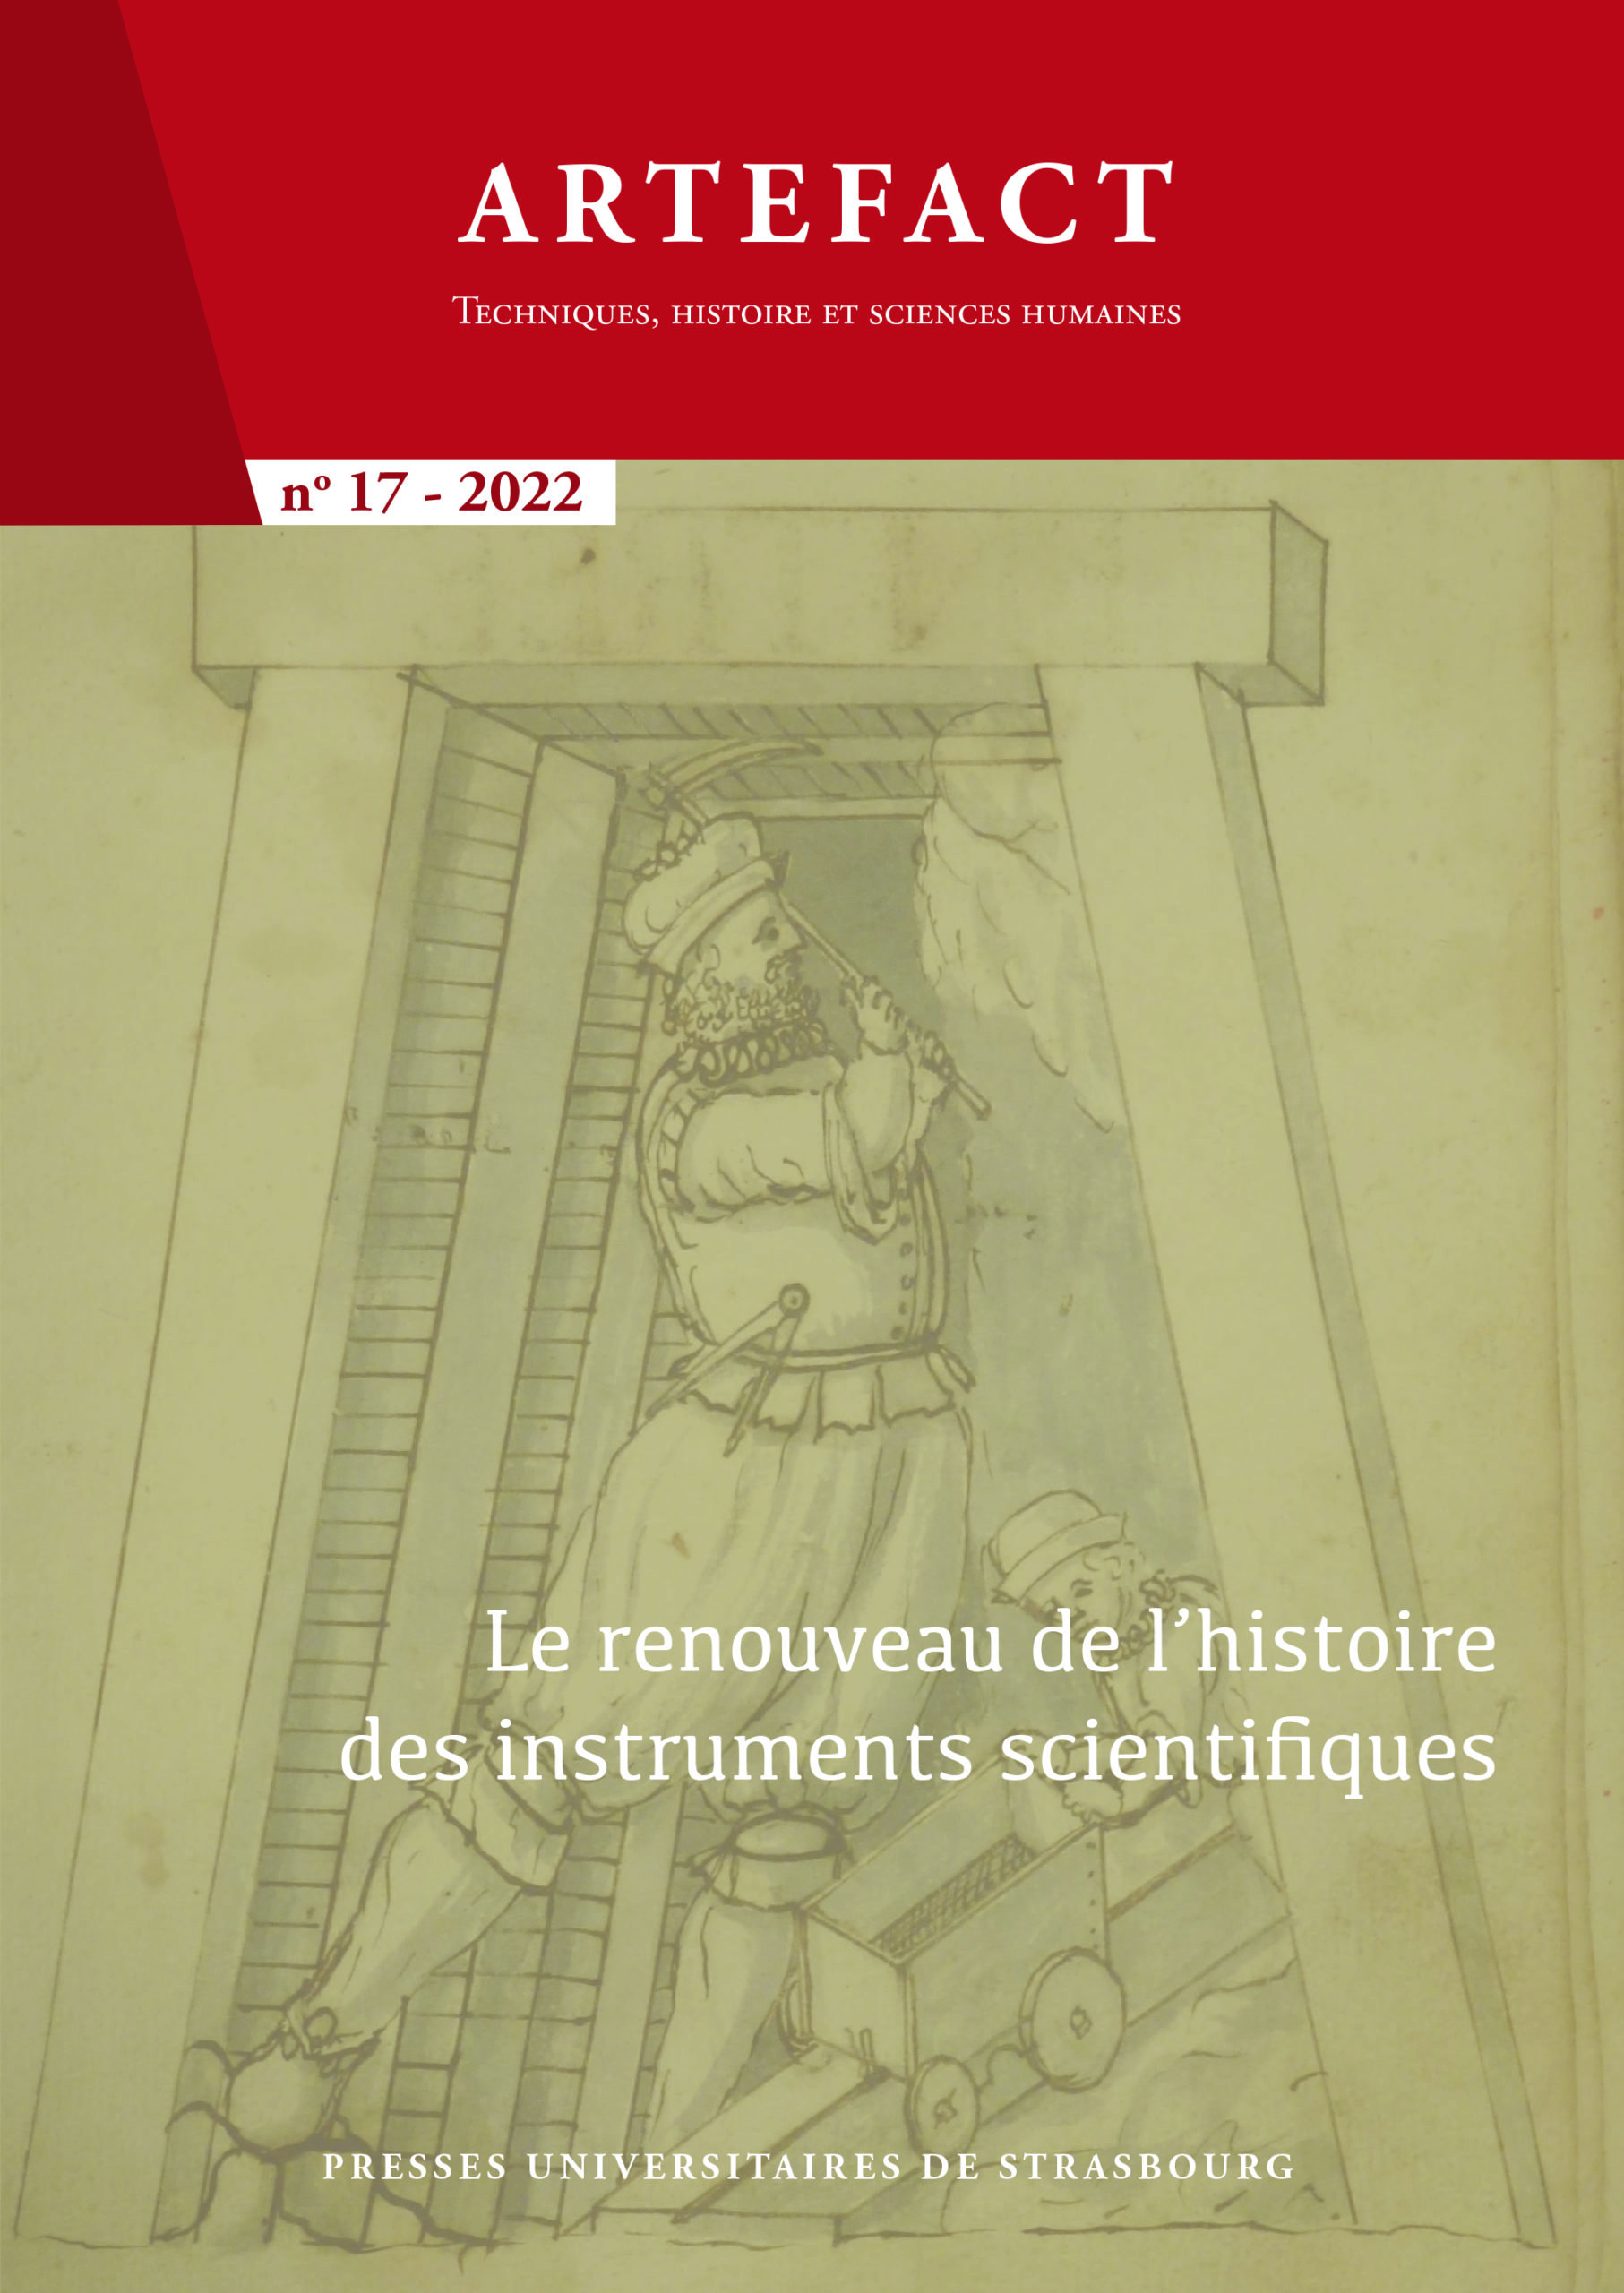 Le renouveau de l’histoire des instruments scientifiques